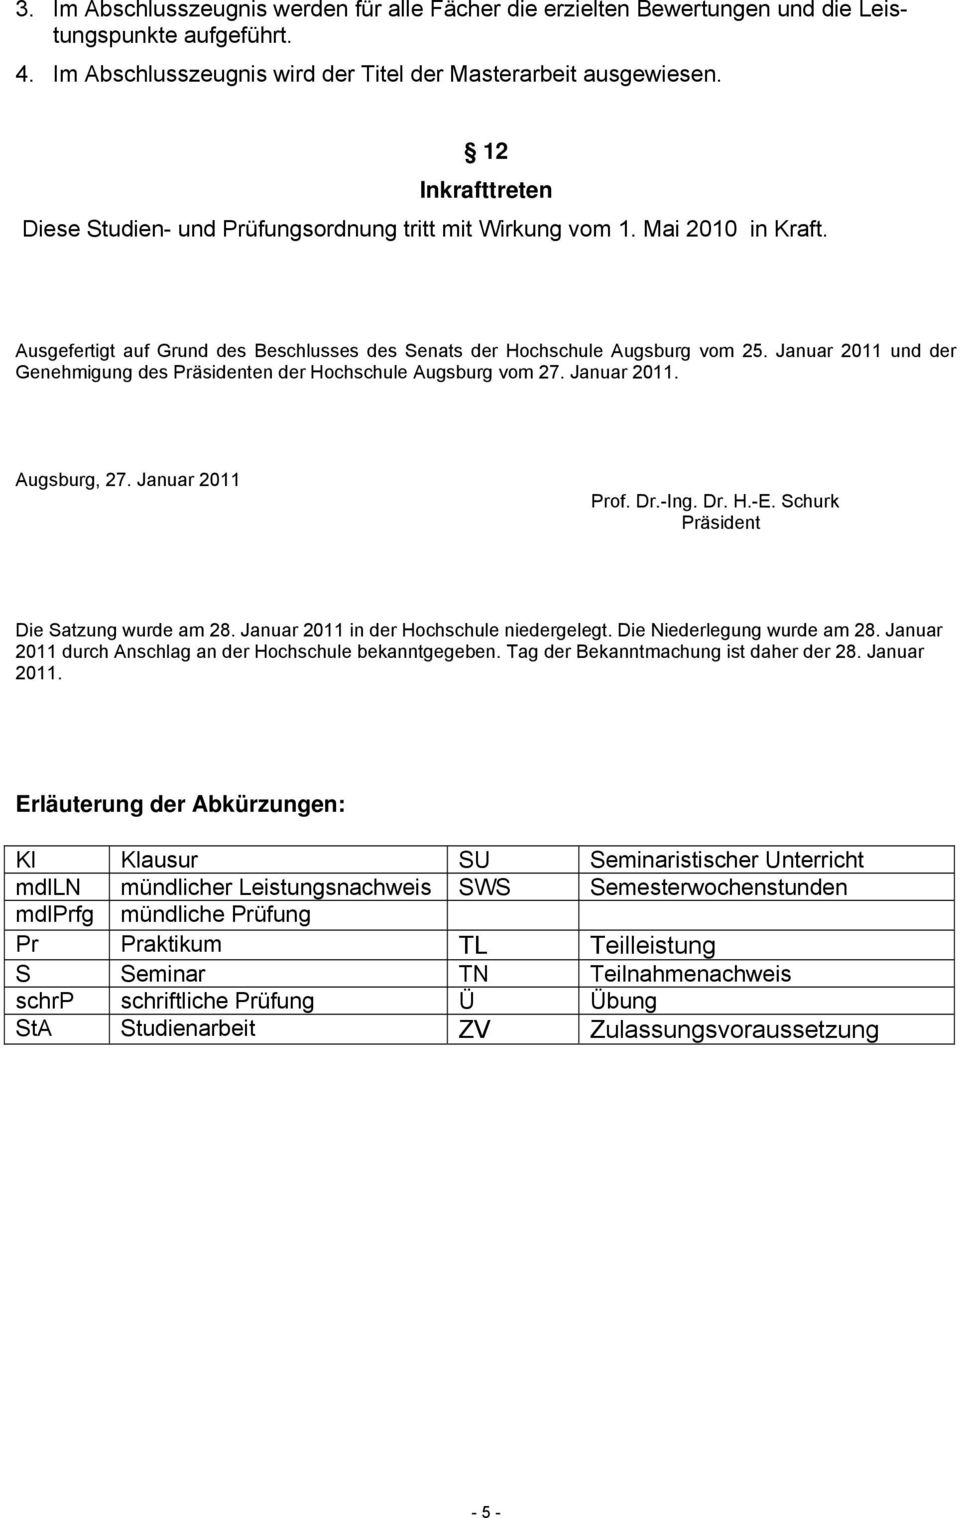 Januar 2011 und der Genehmigung des Präsidenten der Hochschule Augsburg vom 27. Januar 2011. Augsburg, 27. Januar 2011 Prof. Dr.-Ing. Dr. H.-E. Schurk Präsident Die Satzung wurde am 28.